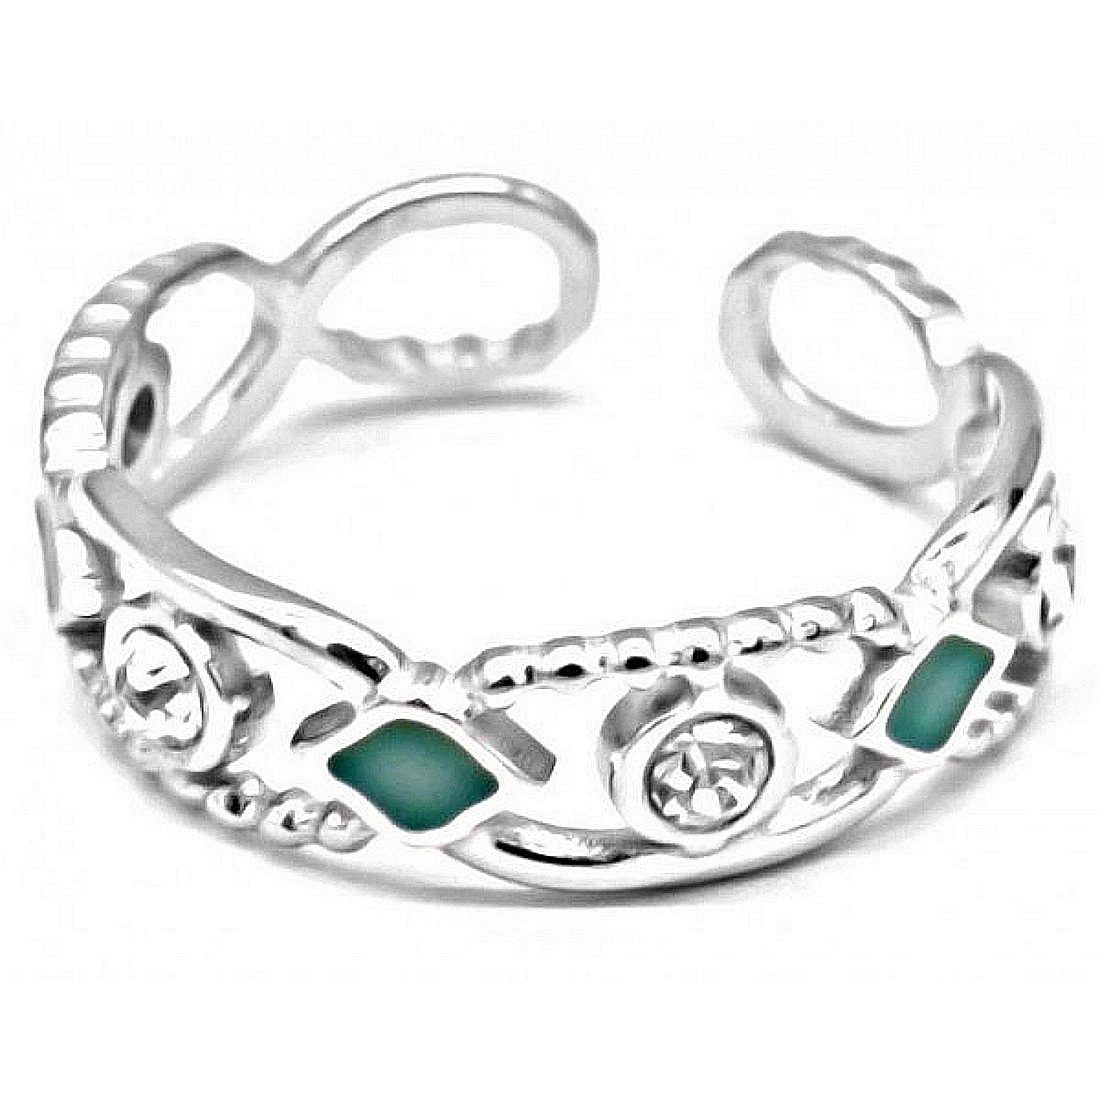 KARMA Fingerring Damenring silber Edelstahl mit grünen Steinen Kristalle verstellbar, Ring Damen Silberring Fingerring